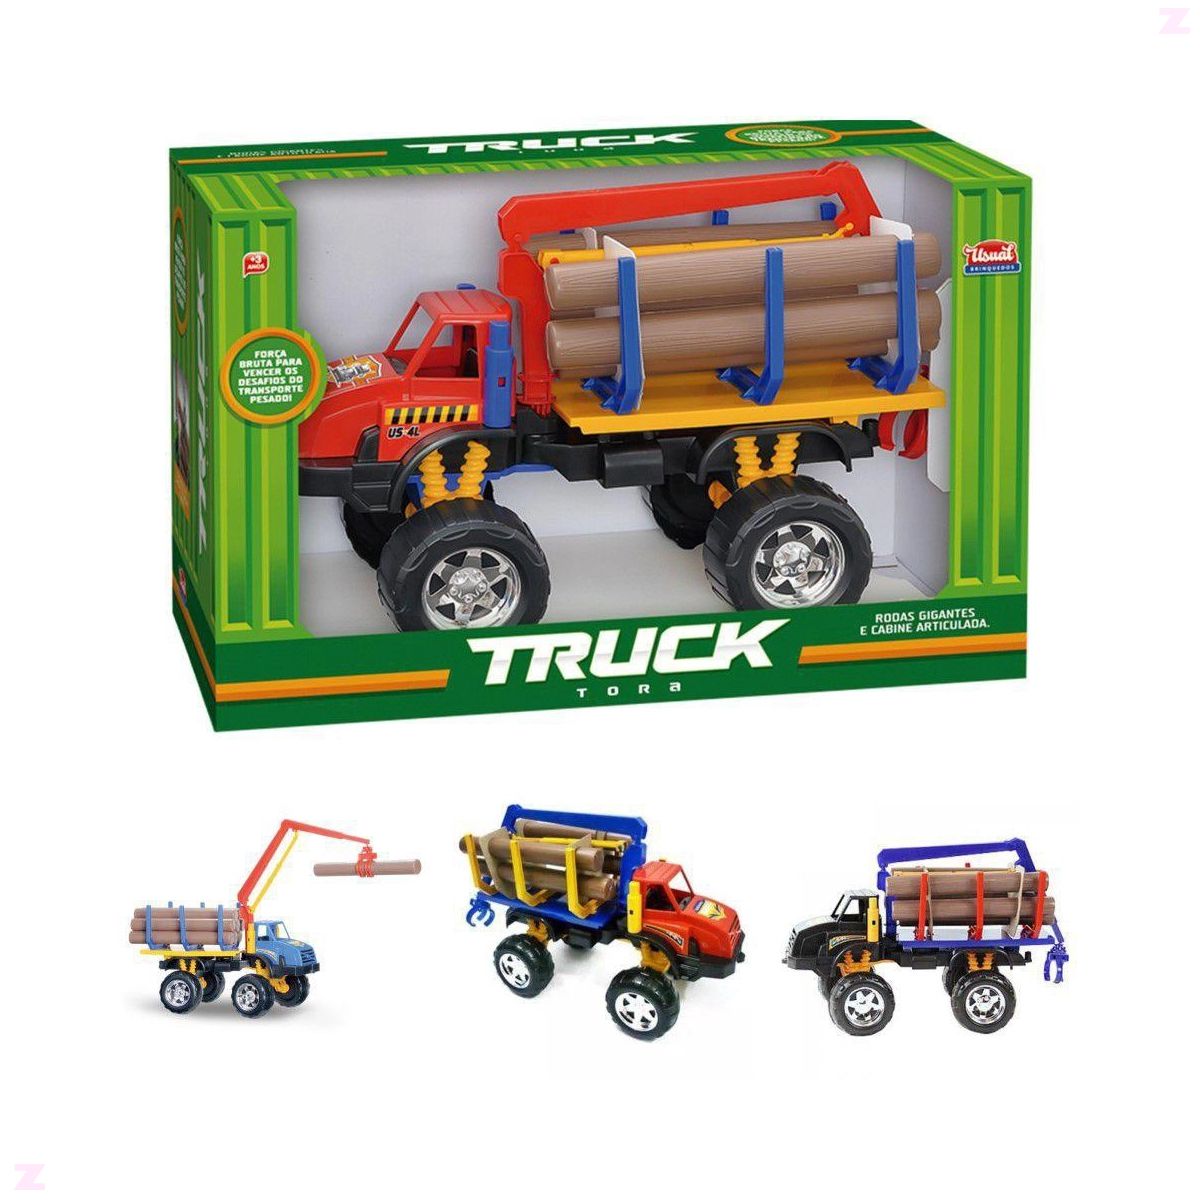 5 em 1 transporte de caminhões de brinquedo para crianças com